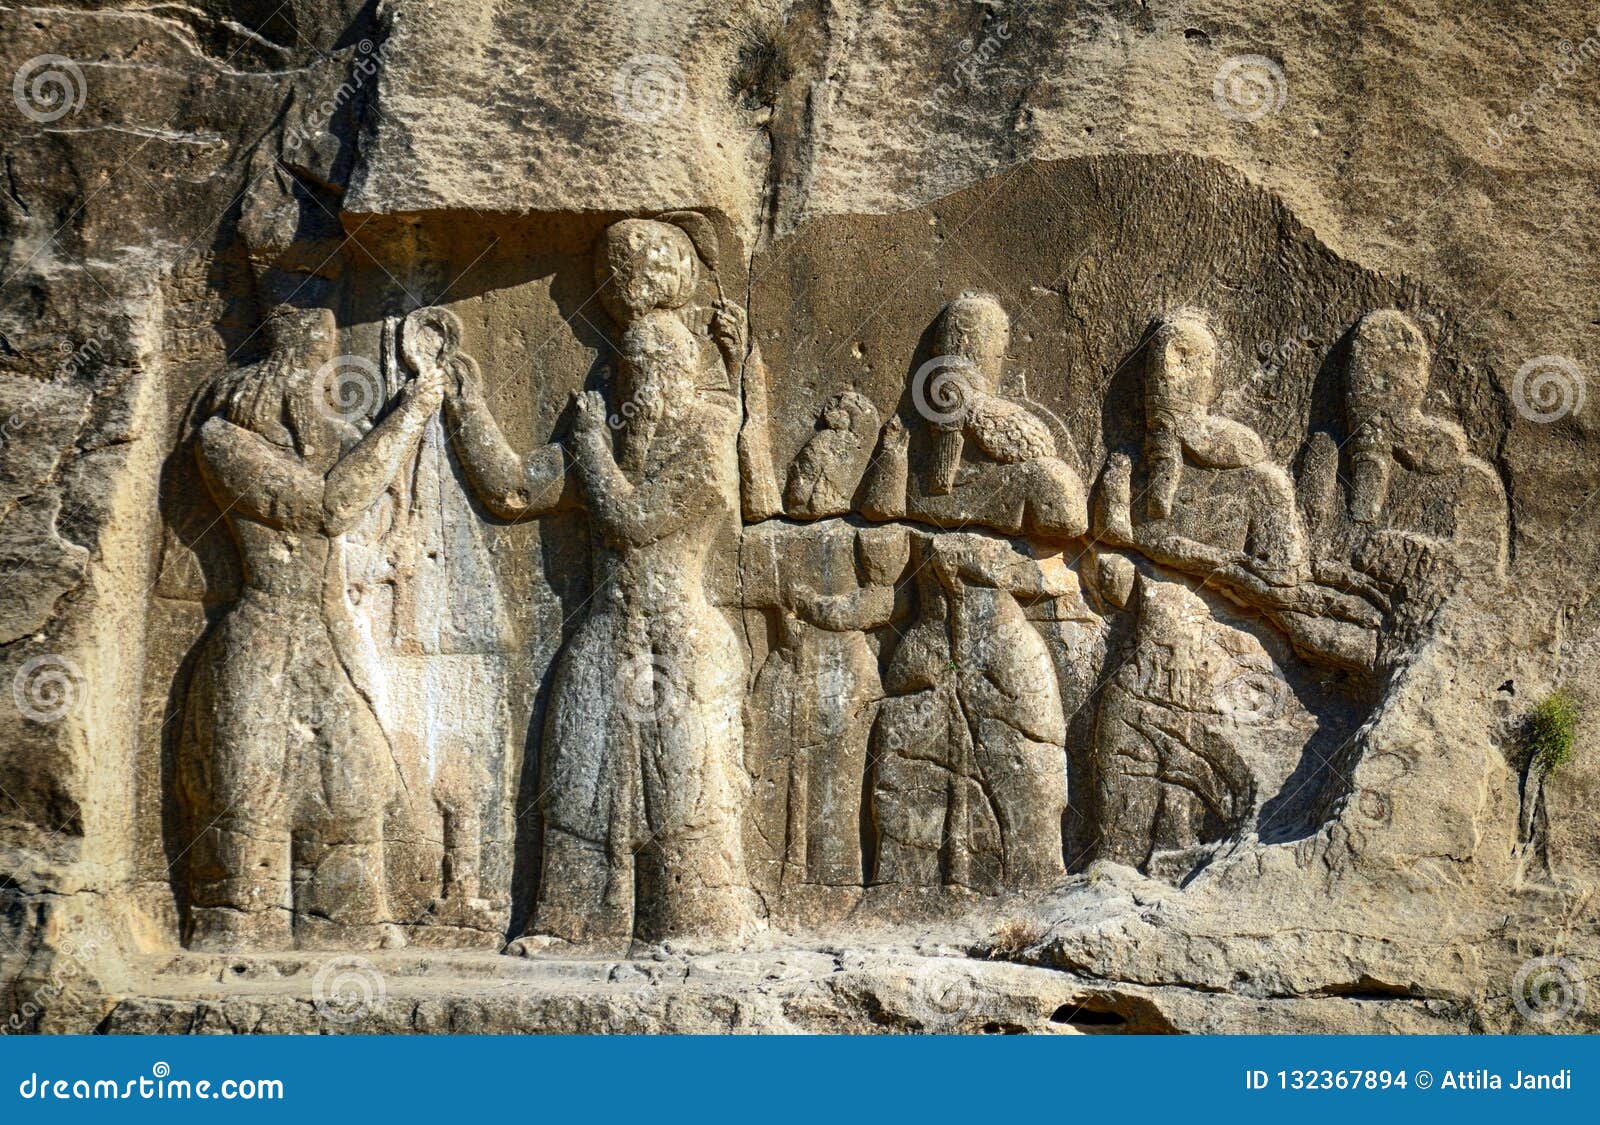 sasanian relief, firouz abad, iran